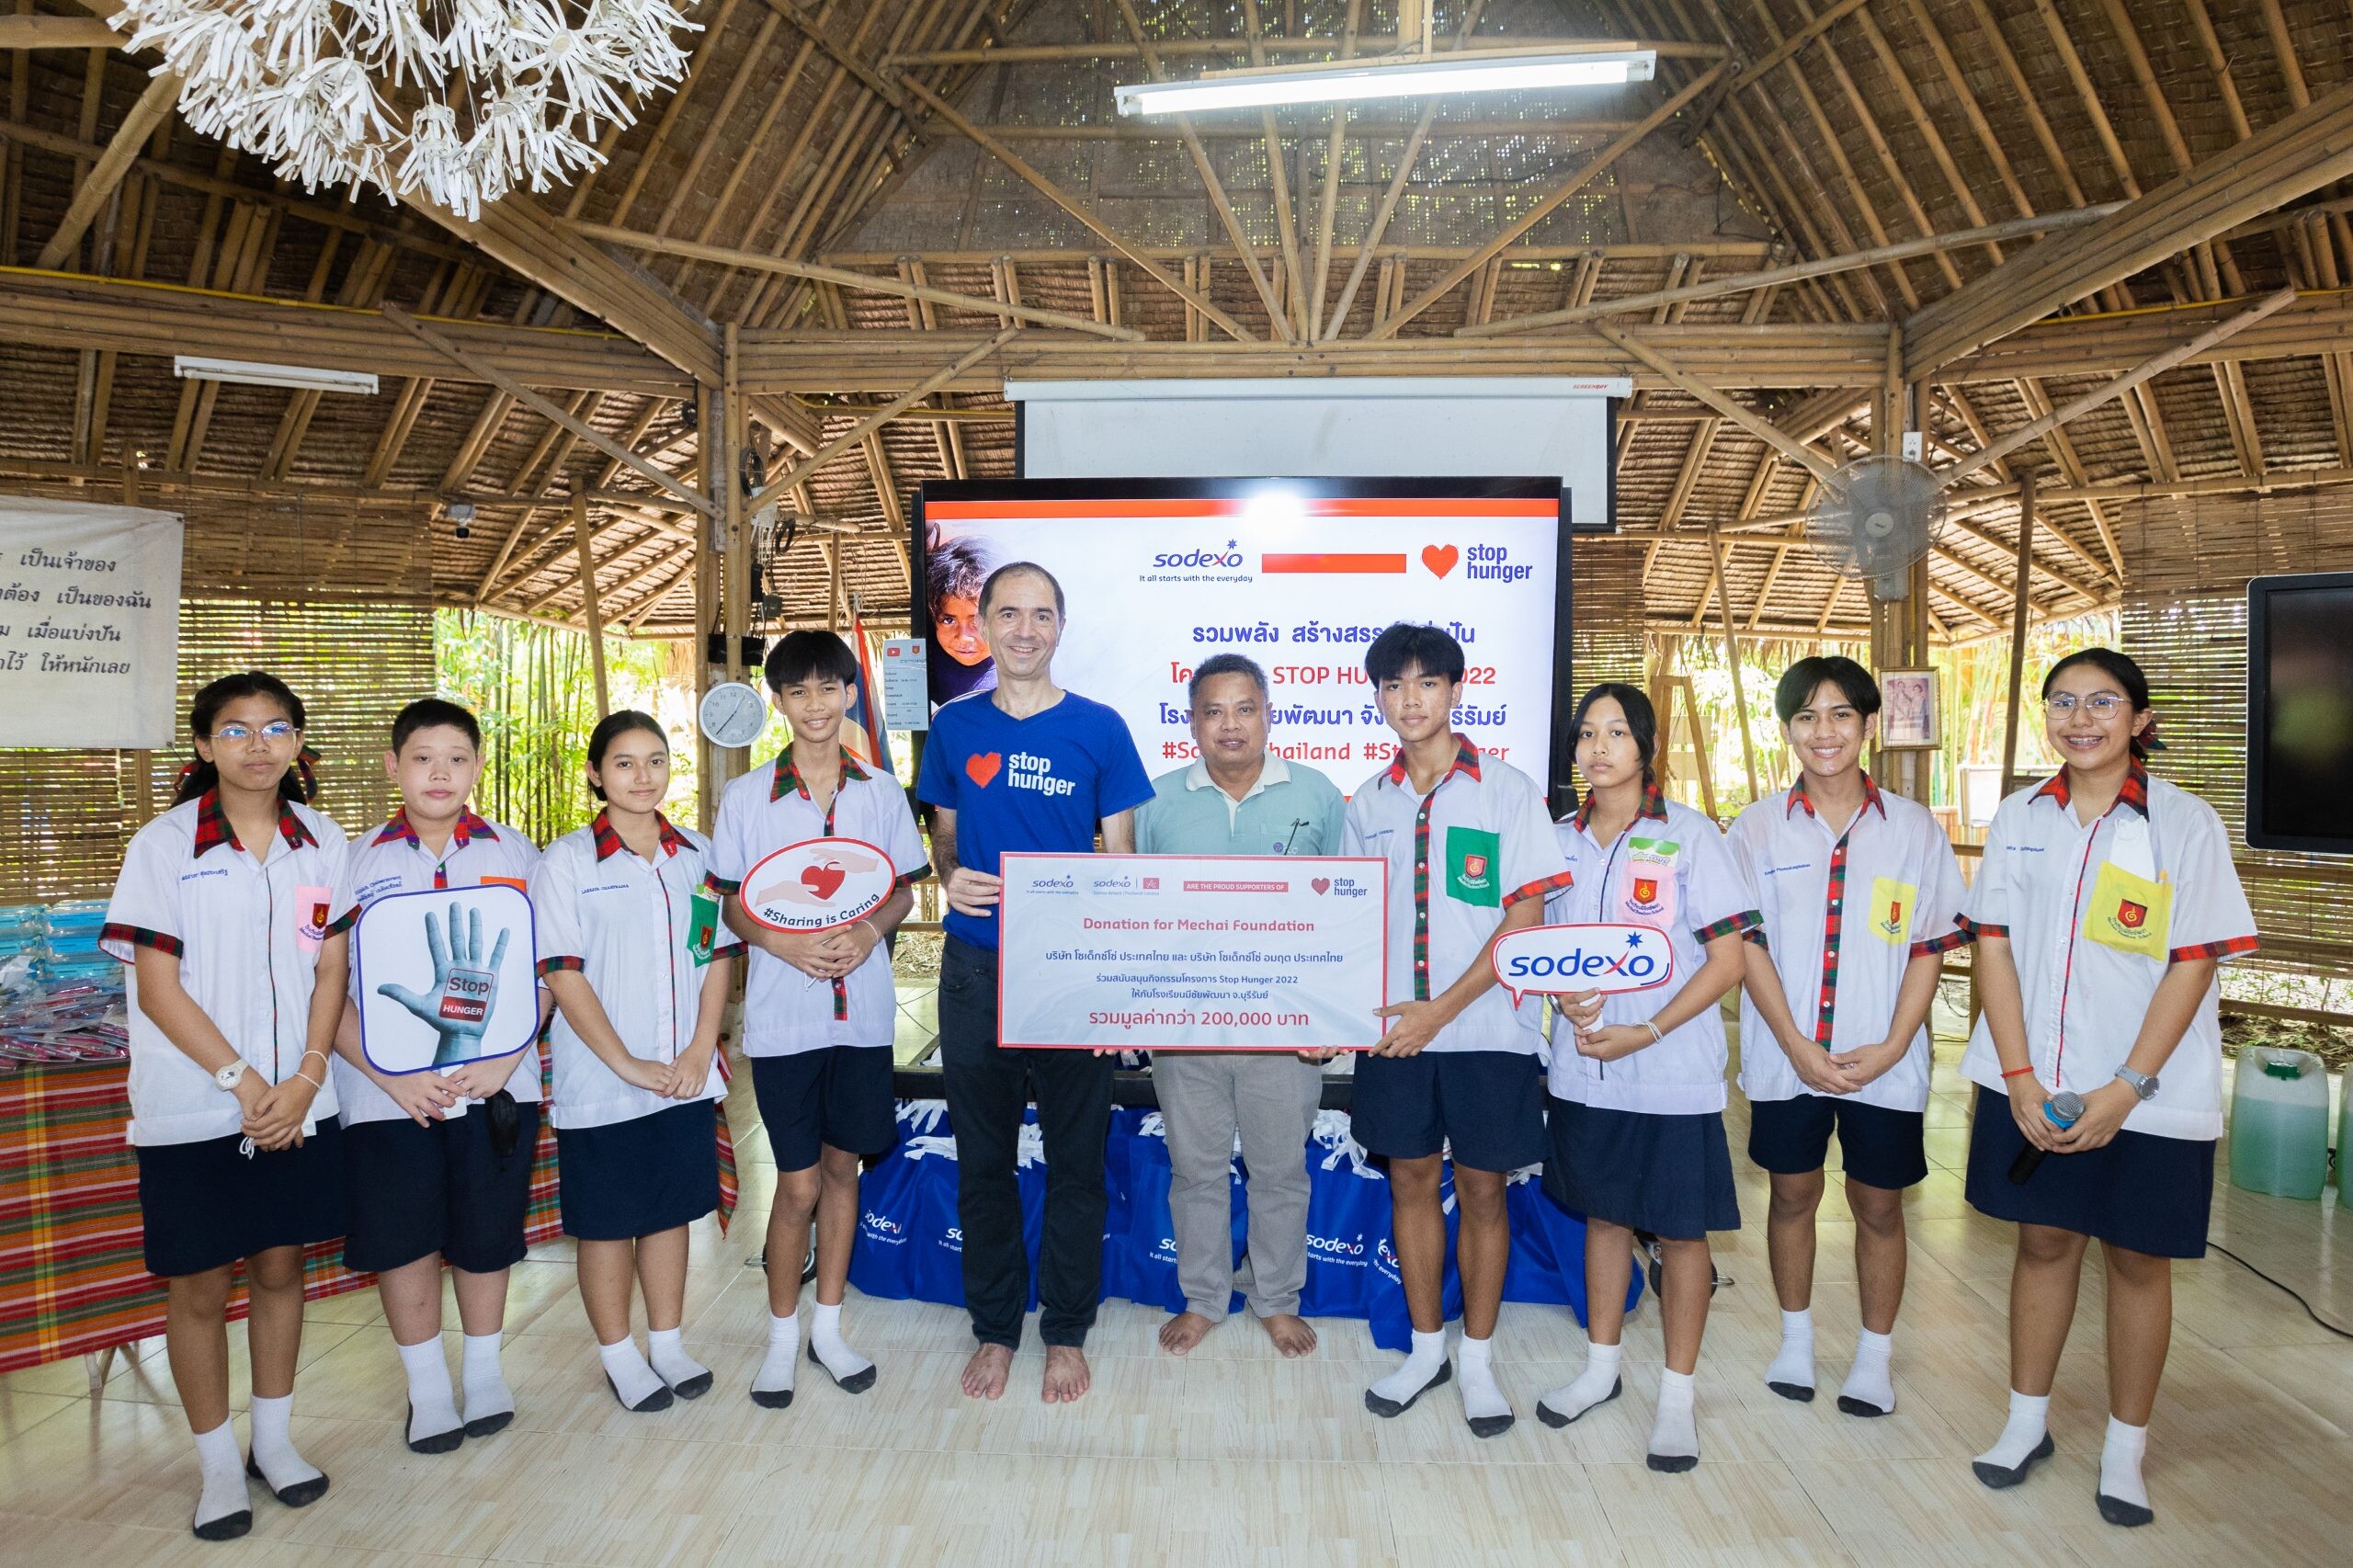 โซเด็กซ์โซ่ ประเทศไทย จัดกิจกรรม "STOP HUNGER" ครั้งที่ 10 ณ โรงเรียนมีชัยพัฒนา จ.บุรีรัมย์